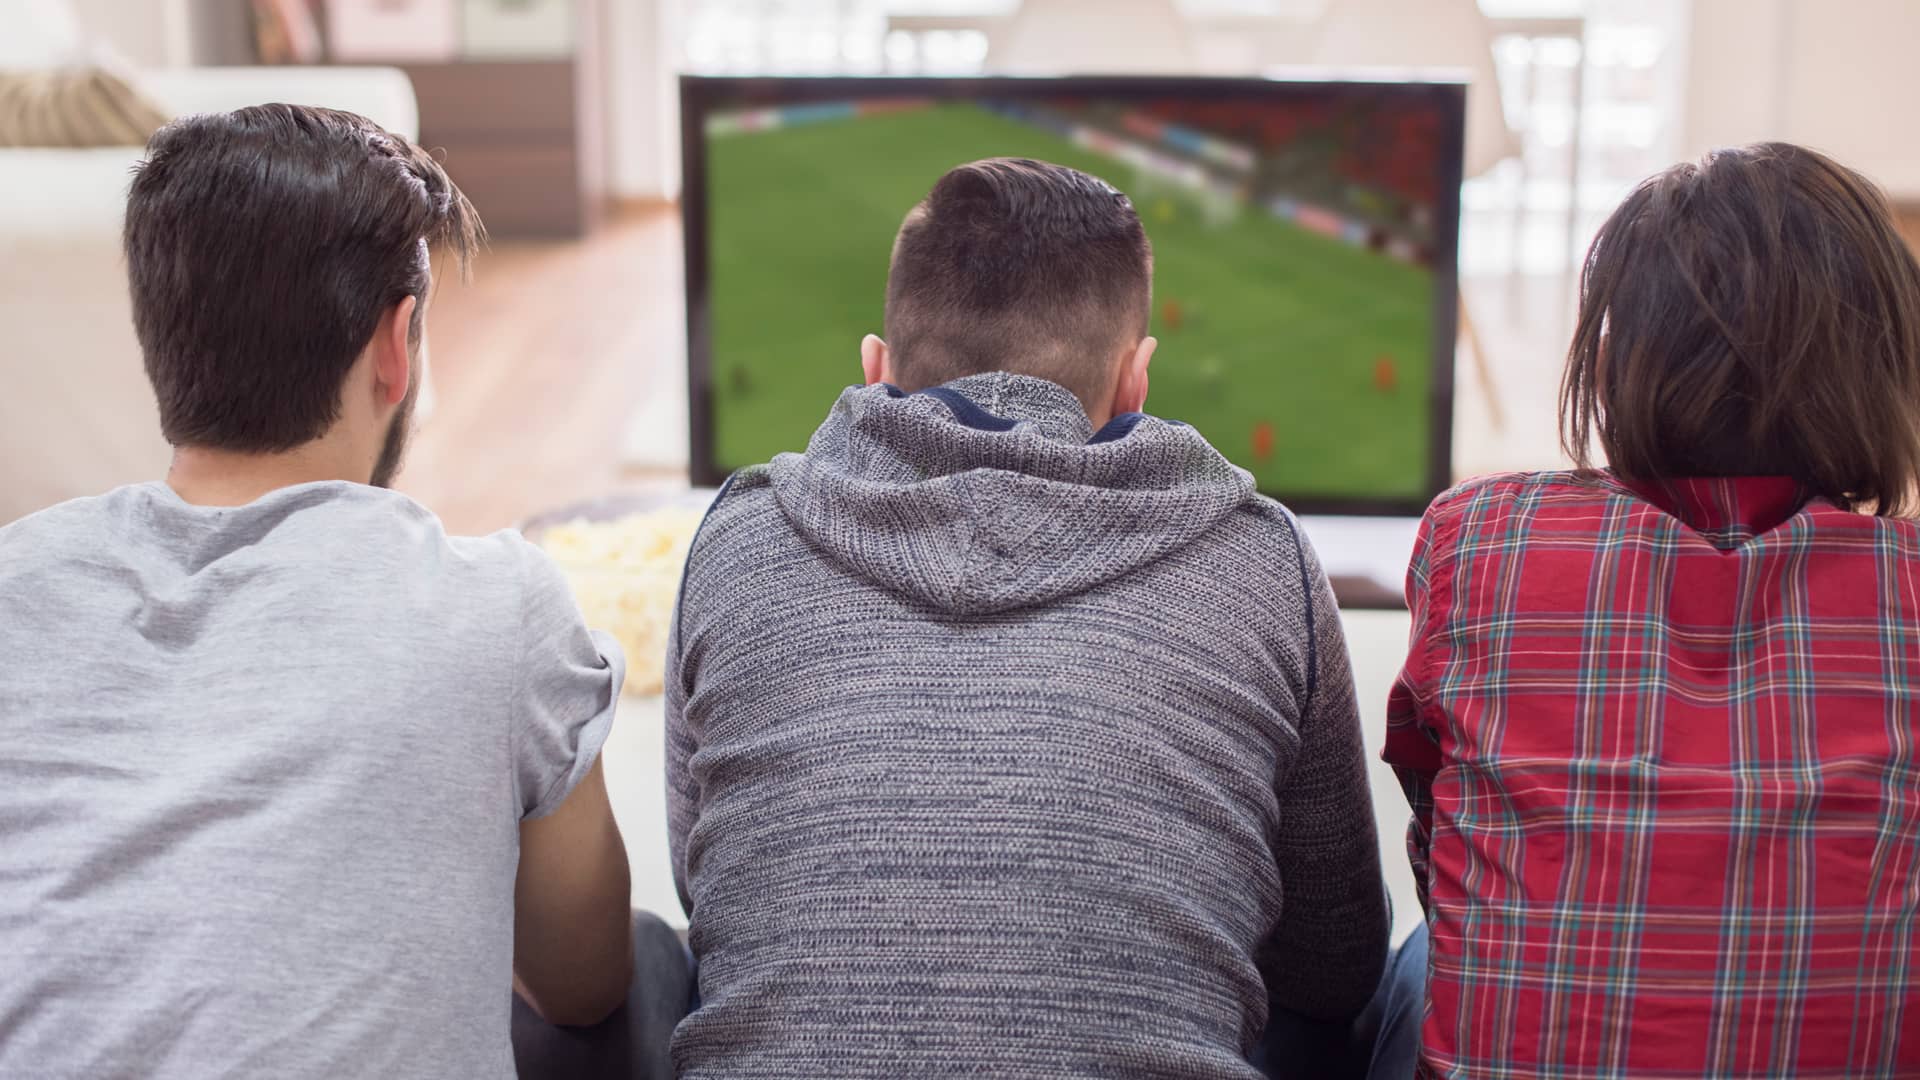 Tres amigos disfrutan de un partido de fútbol en su televisión a través de finetwork tras consultar nuestra guía